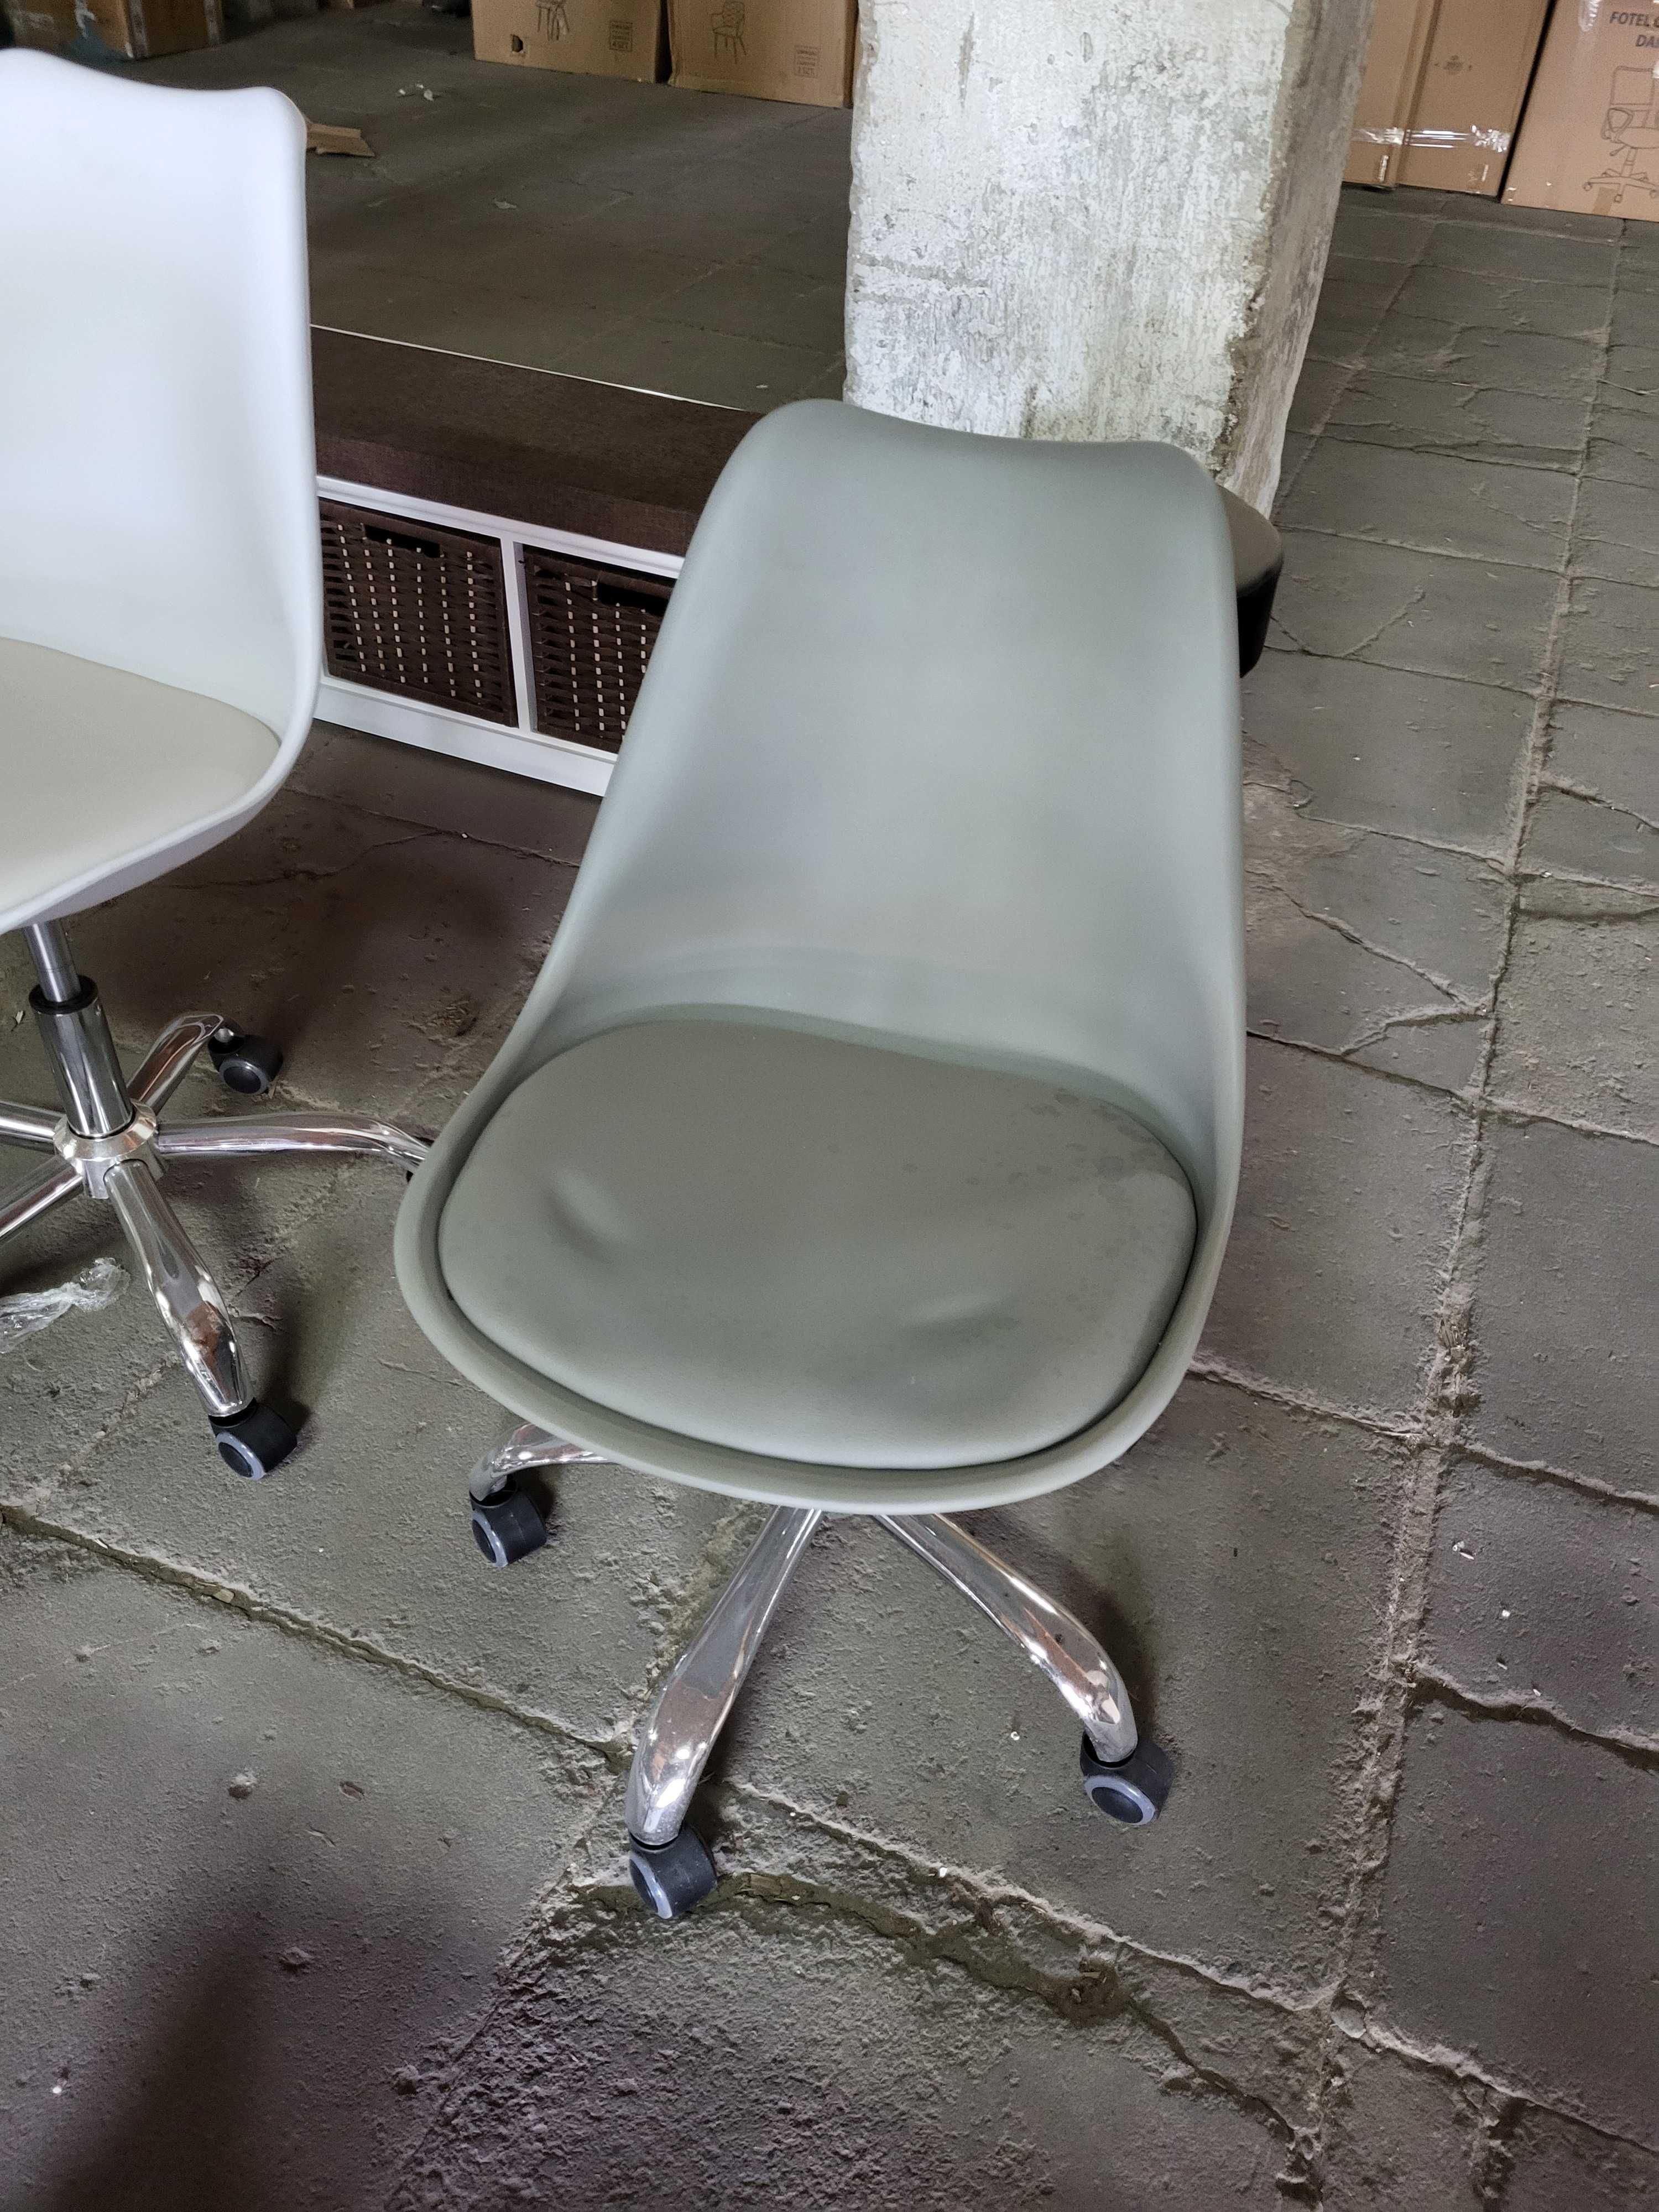 Krzesło fotel obrotowy 3 kolory